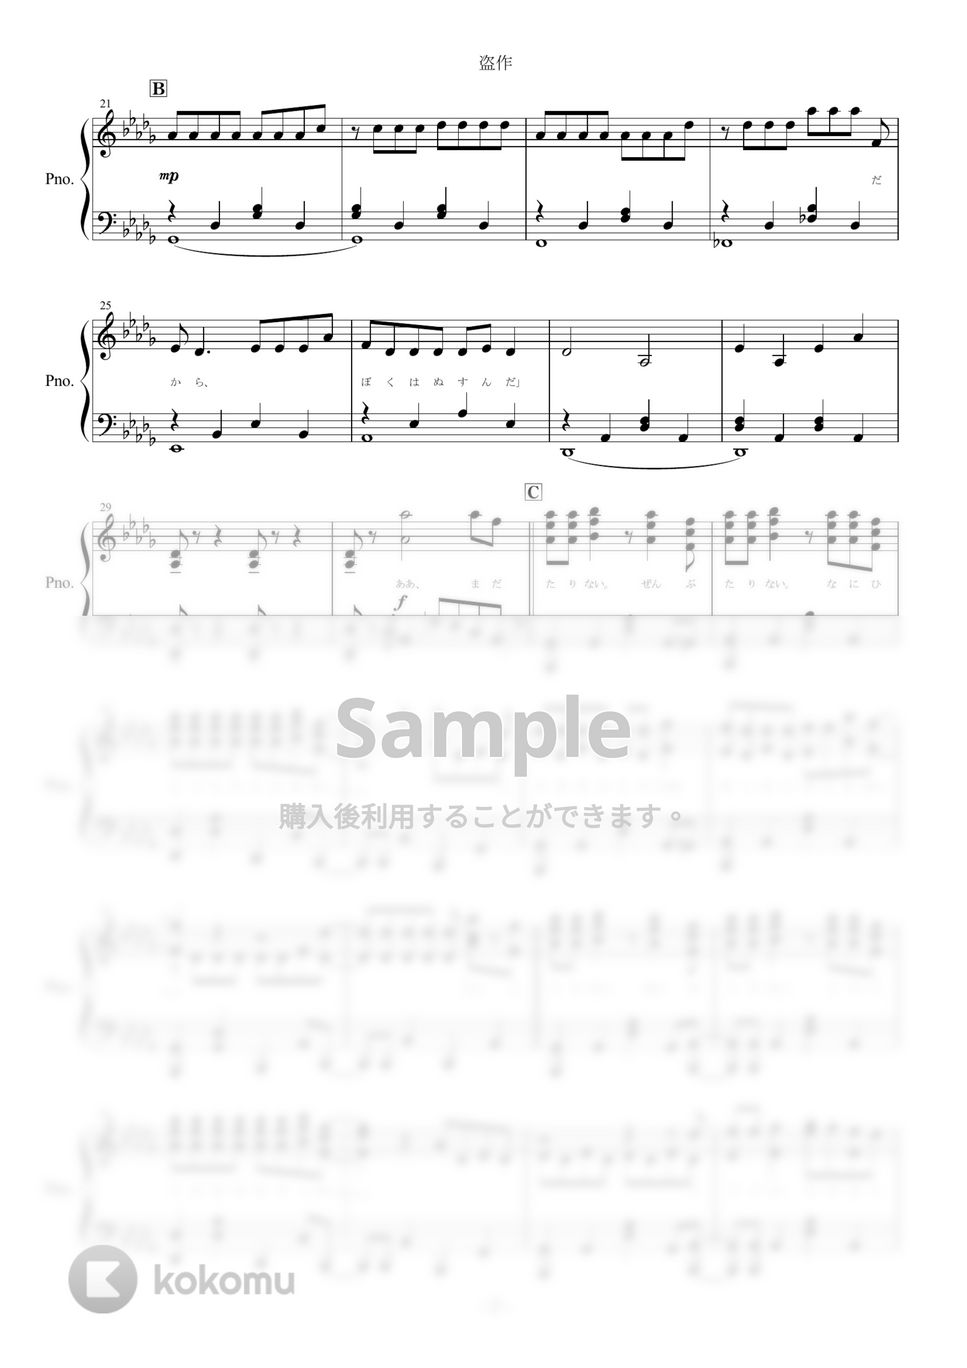 ヨルシカ - 盗作 (ピアノ楽譜/全９ページ) by yoshi